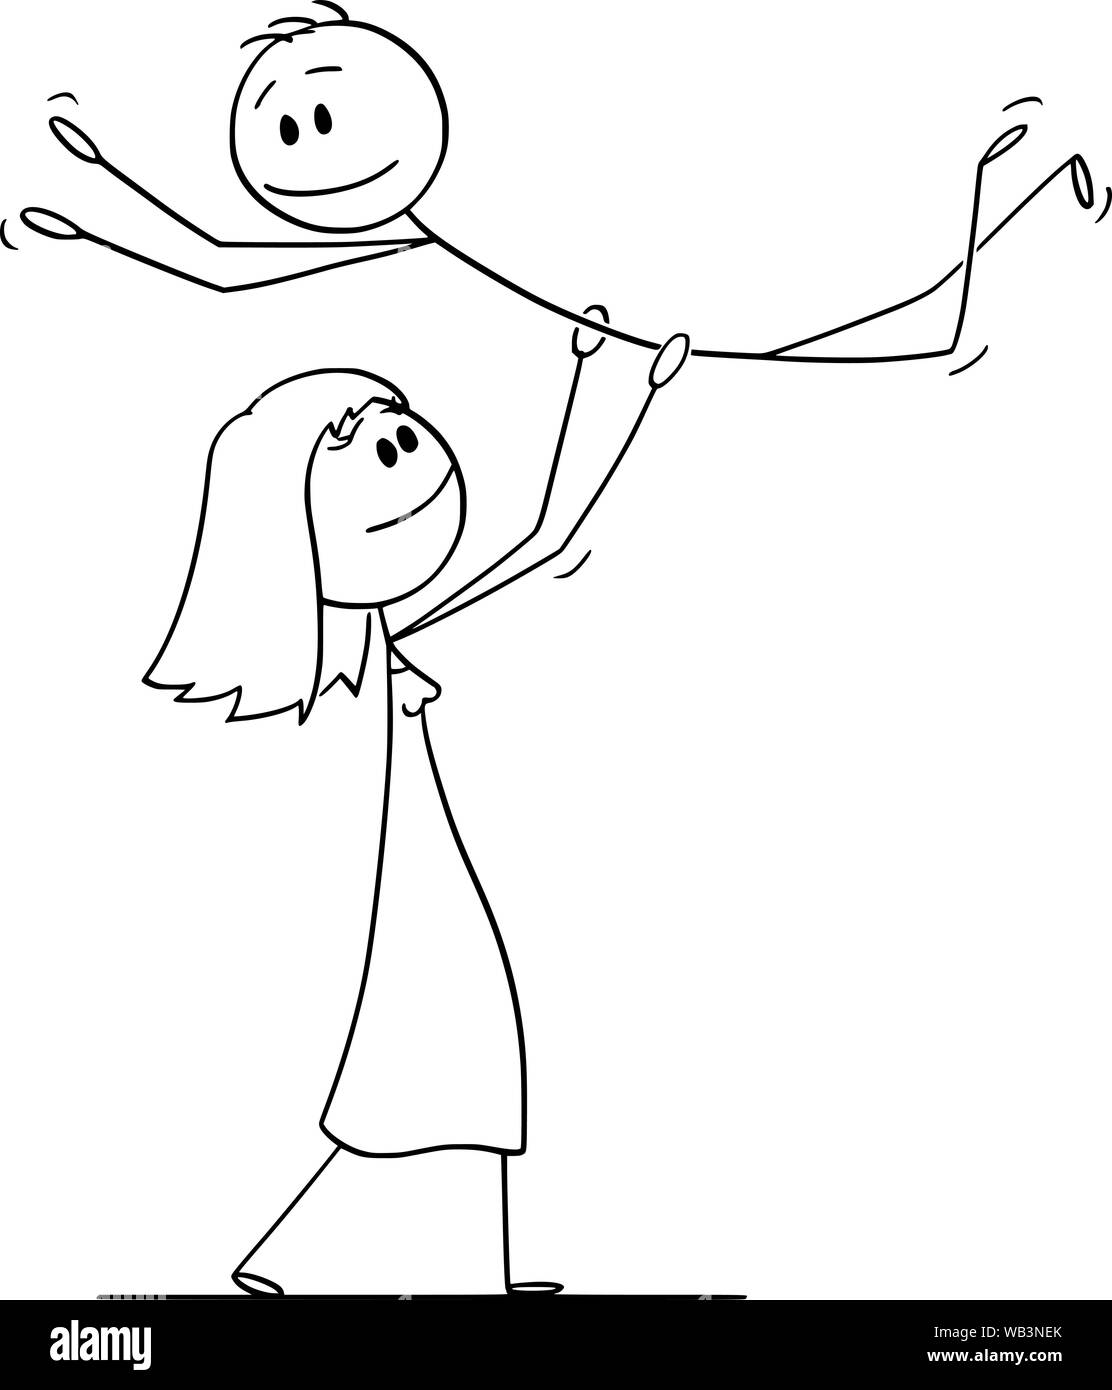 Vektor cartoon Strichmännchen Zeichnen konzeptionelle Darstellung der heterosexuellen Paar Frau Mann anheben, während sie Tanz Abheben beim Tanzen darstellen. Stock Vektor